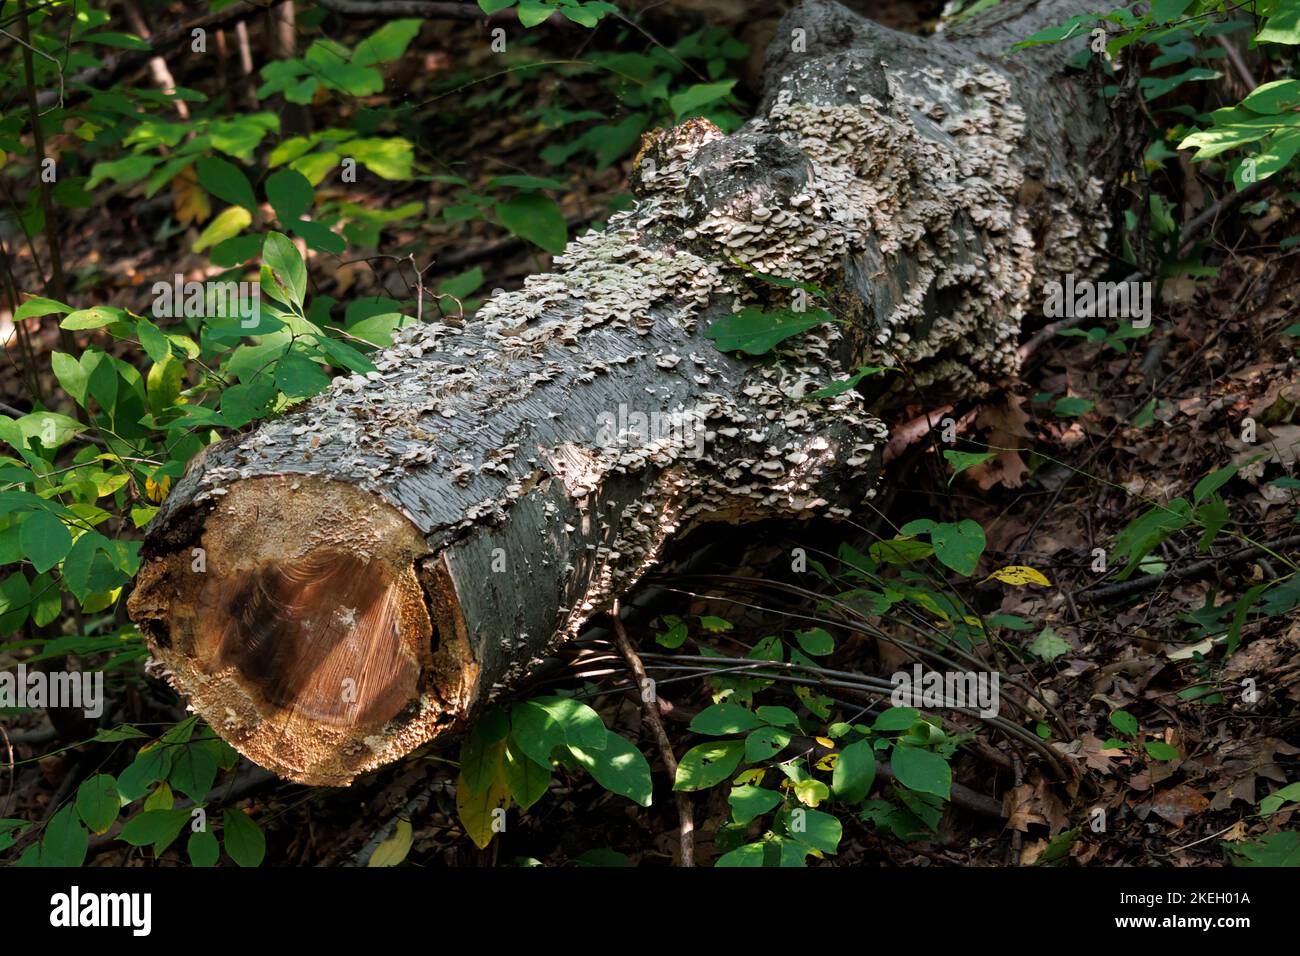 un tronco de árbol talado que yace en el bosque con setas escamosas que crecen por todo el bosque, rodeado de follaje verde Foto de stock